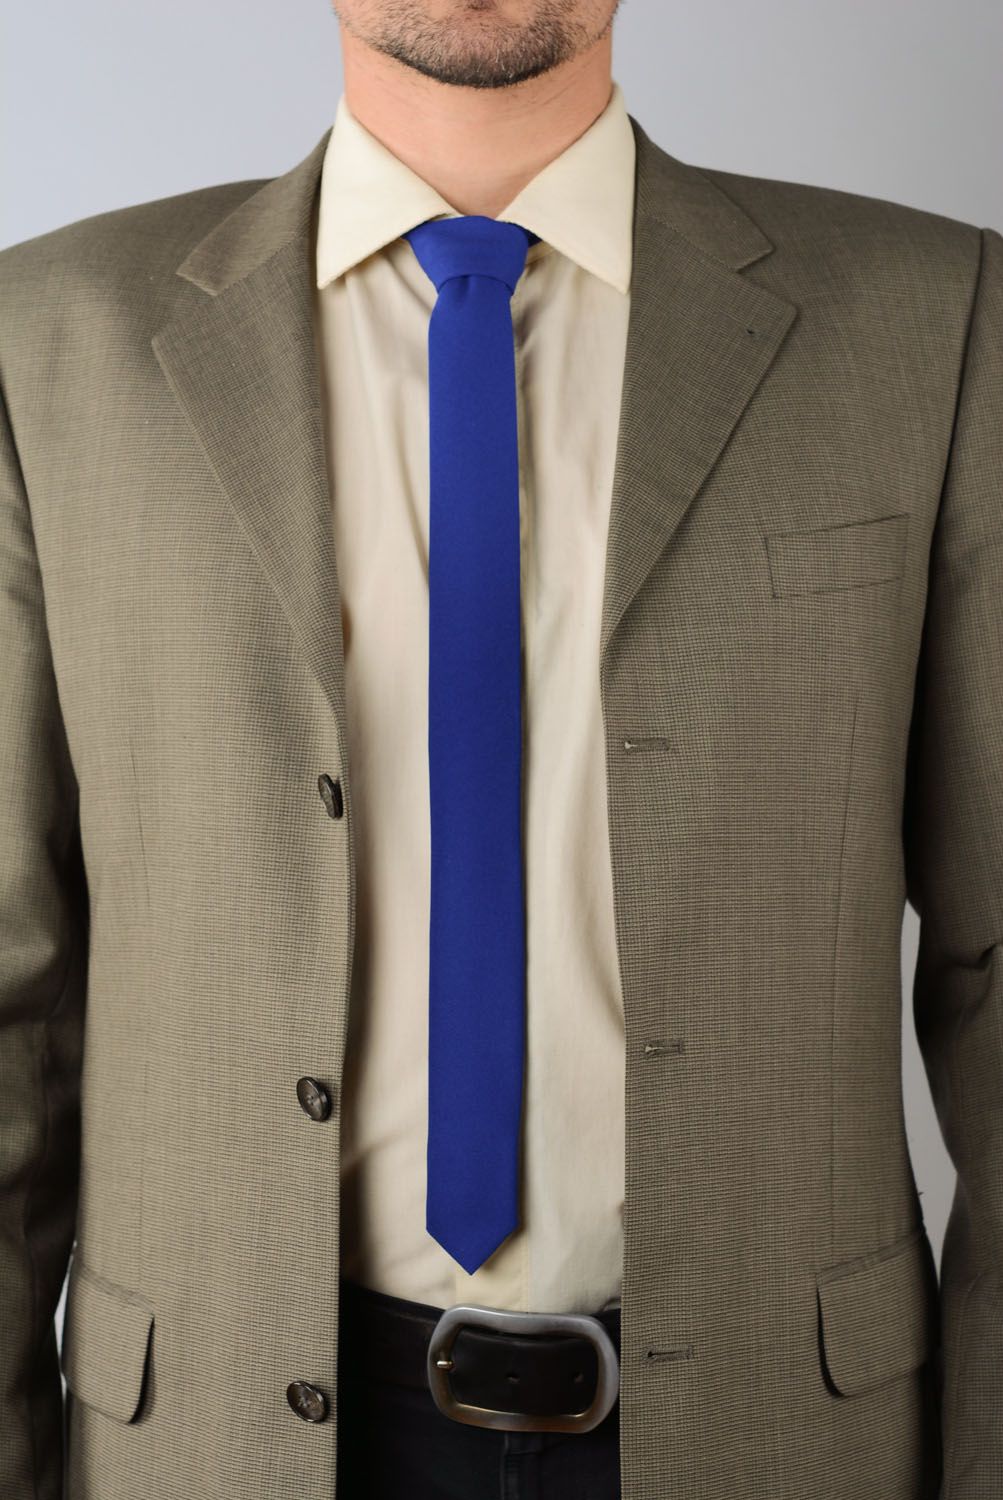 Cravate bleue en étoffe pour costume faite main photo 1